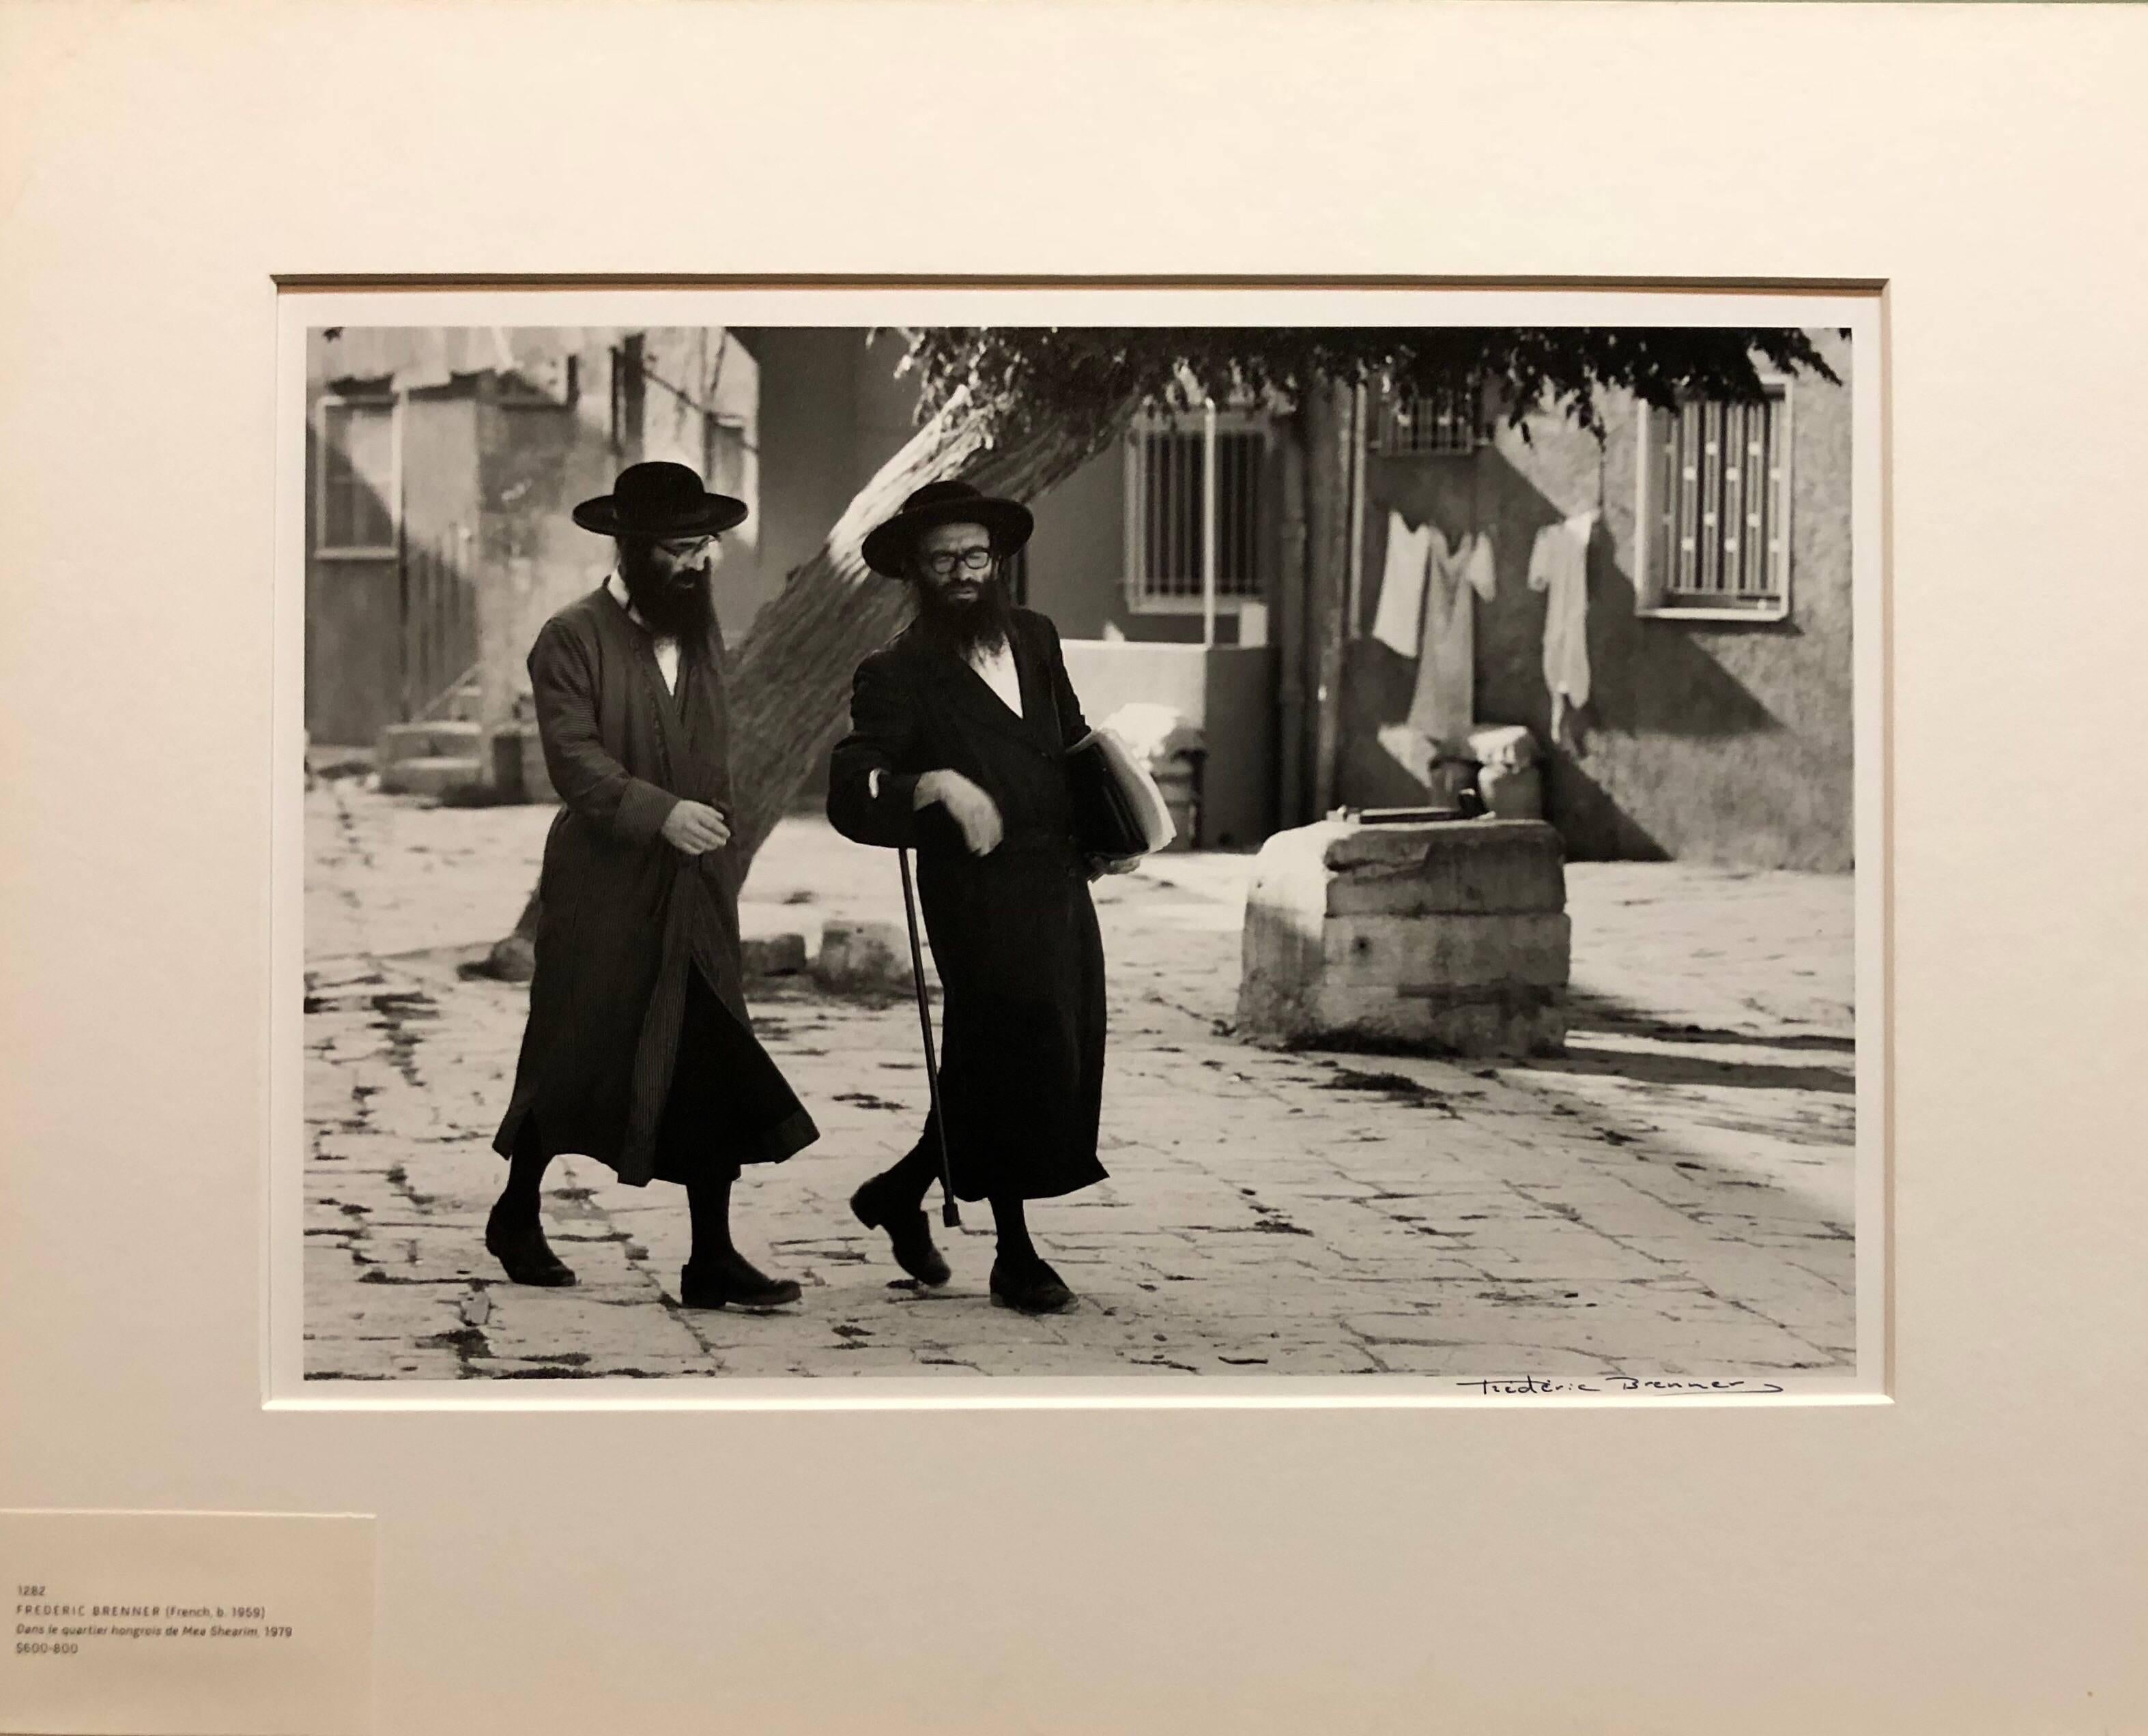 Meah Shearim Foto von Tora-Gelehrten. Rabbiner in Jerusalem. Foto des ungarischen Viertels.

Frédéric Brenner (geb. 1959) ist ein französischer Fotograf, der für seine Dokumentation jüdischer Gemeinden in aller Welt bekannt ist. Seine Arbeiten